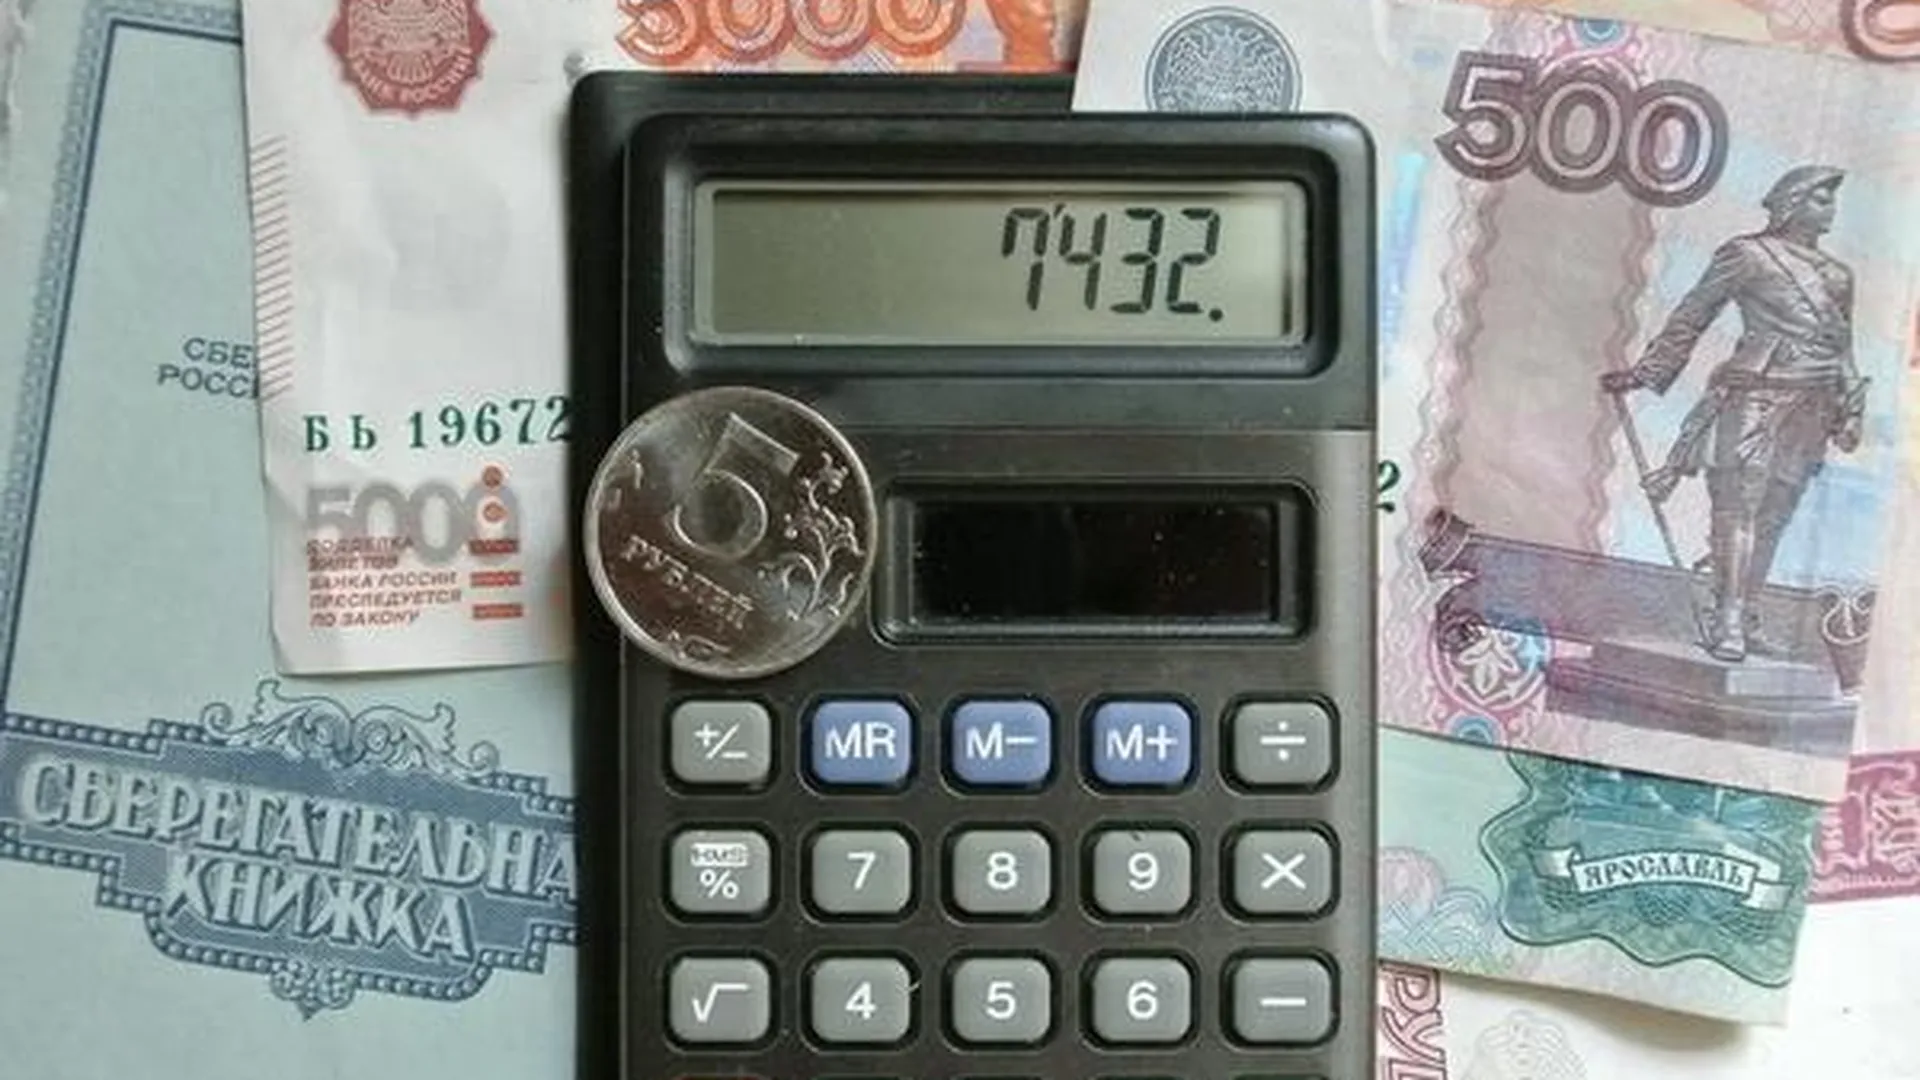 ТСЖ в Мытищах вернет жителям почти 1,5 млн рублей